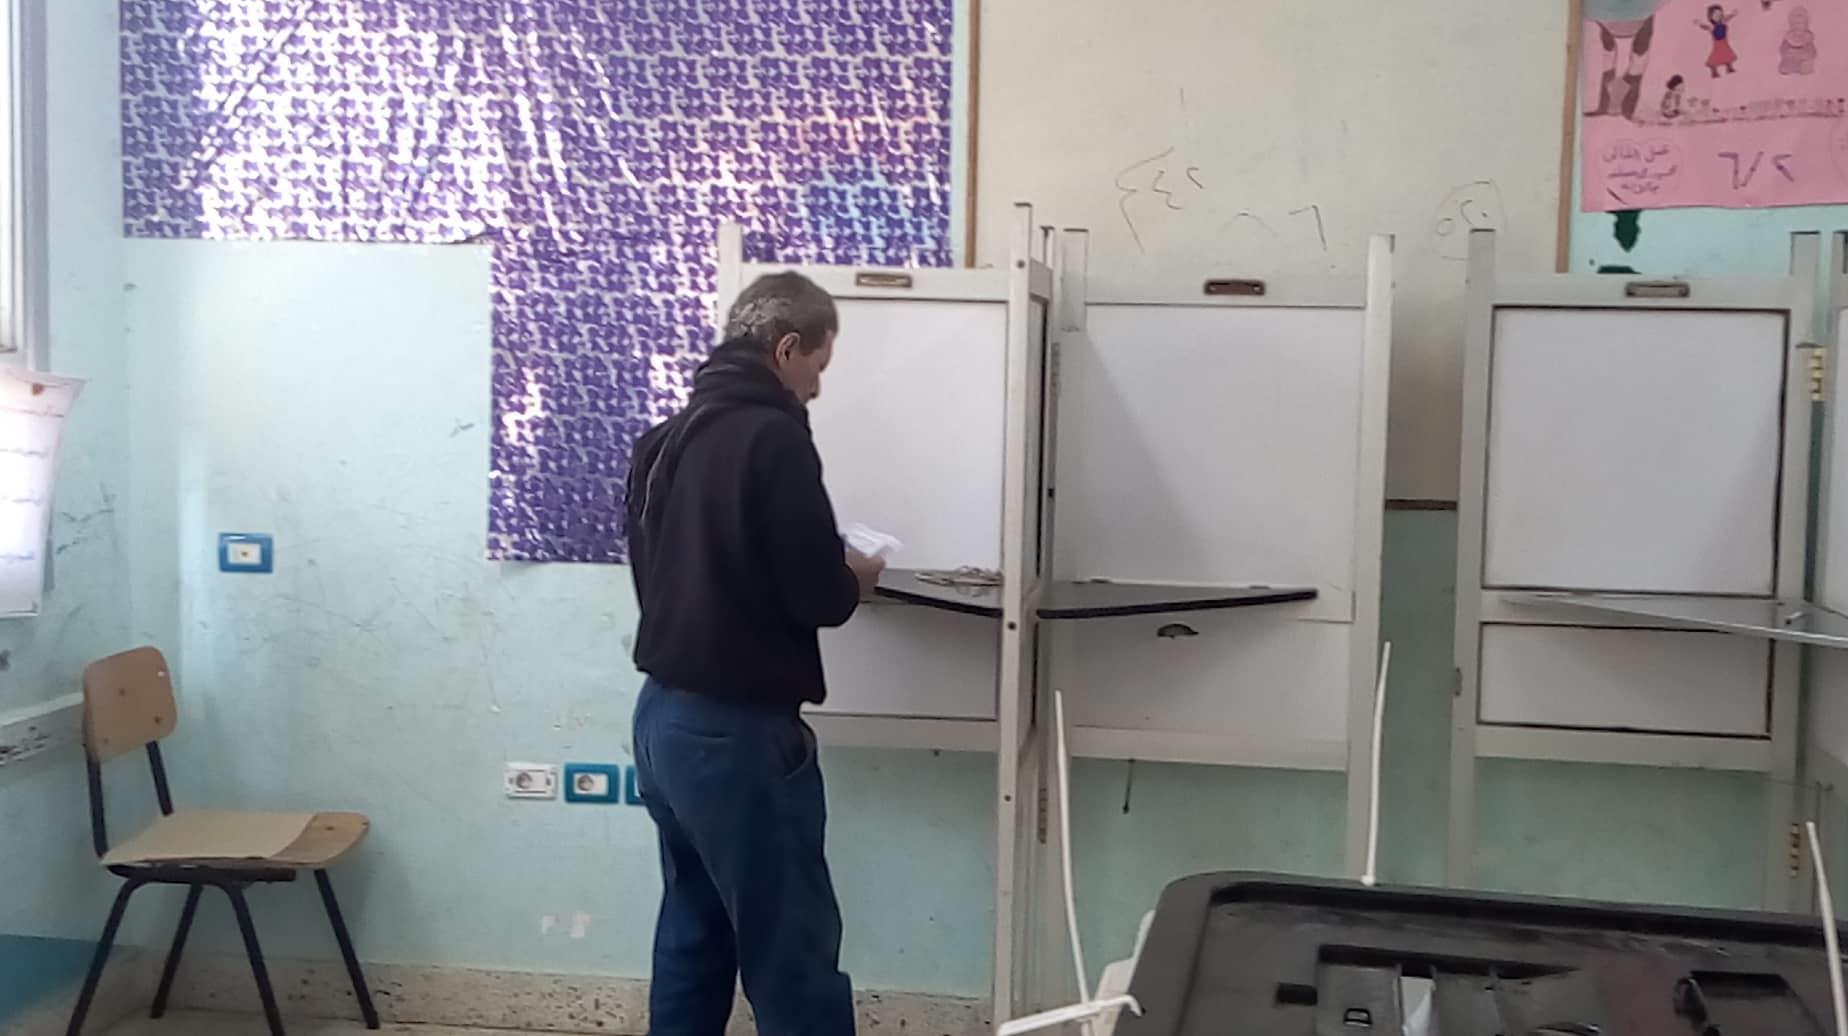 أحد المواطنين أثناء عملية التصويت بدائرة طامية بالفيوم